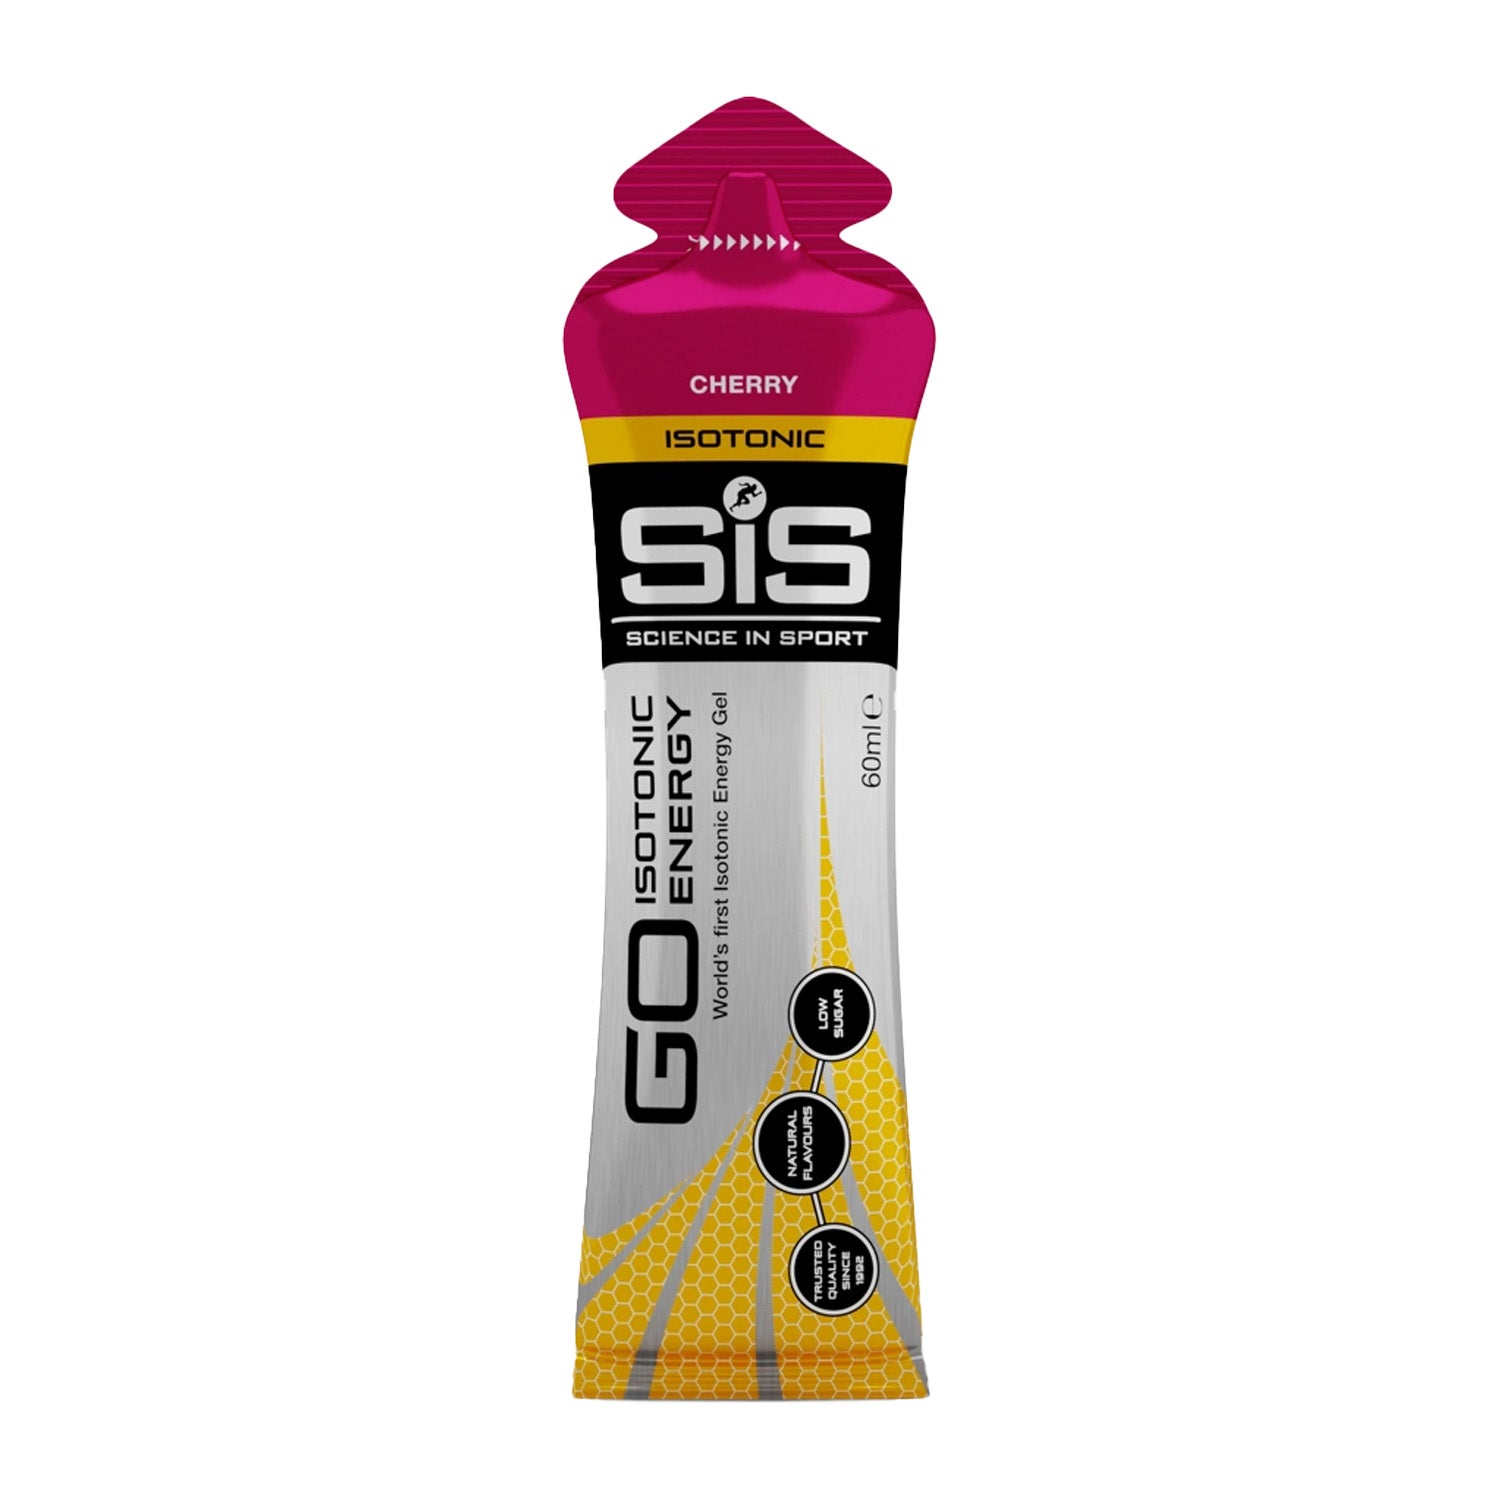 Science in Sport - SiS energy gel